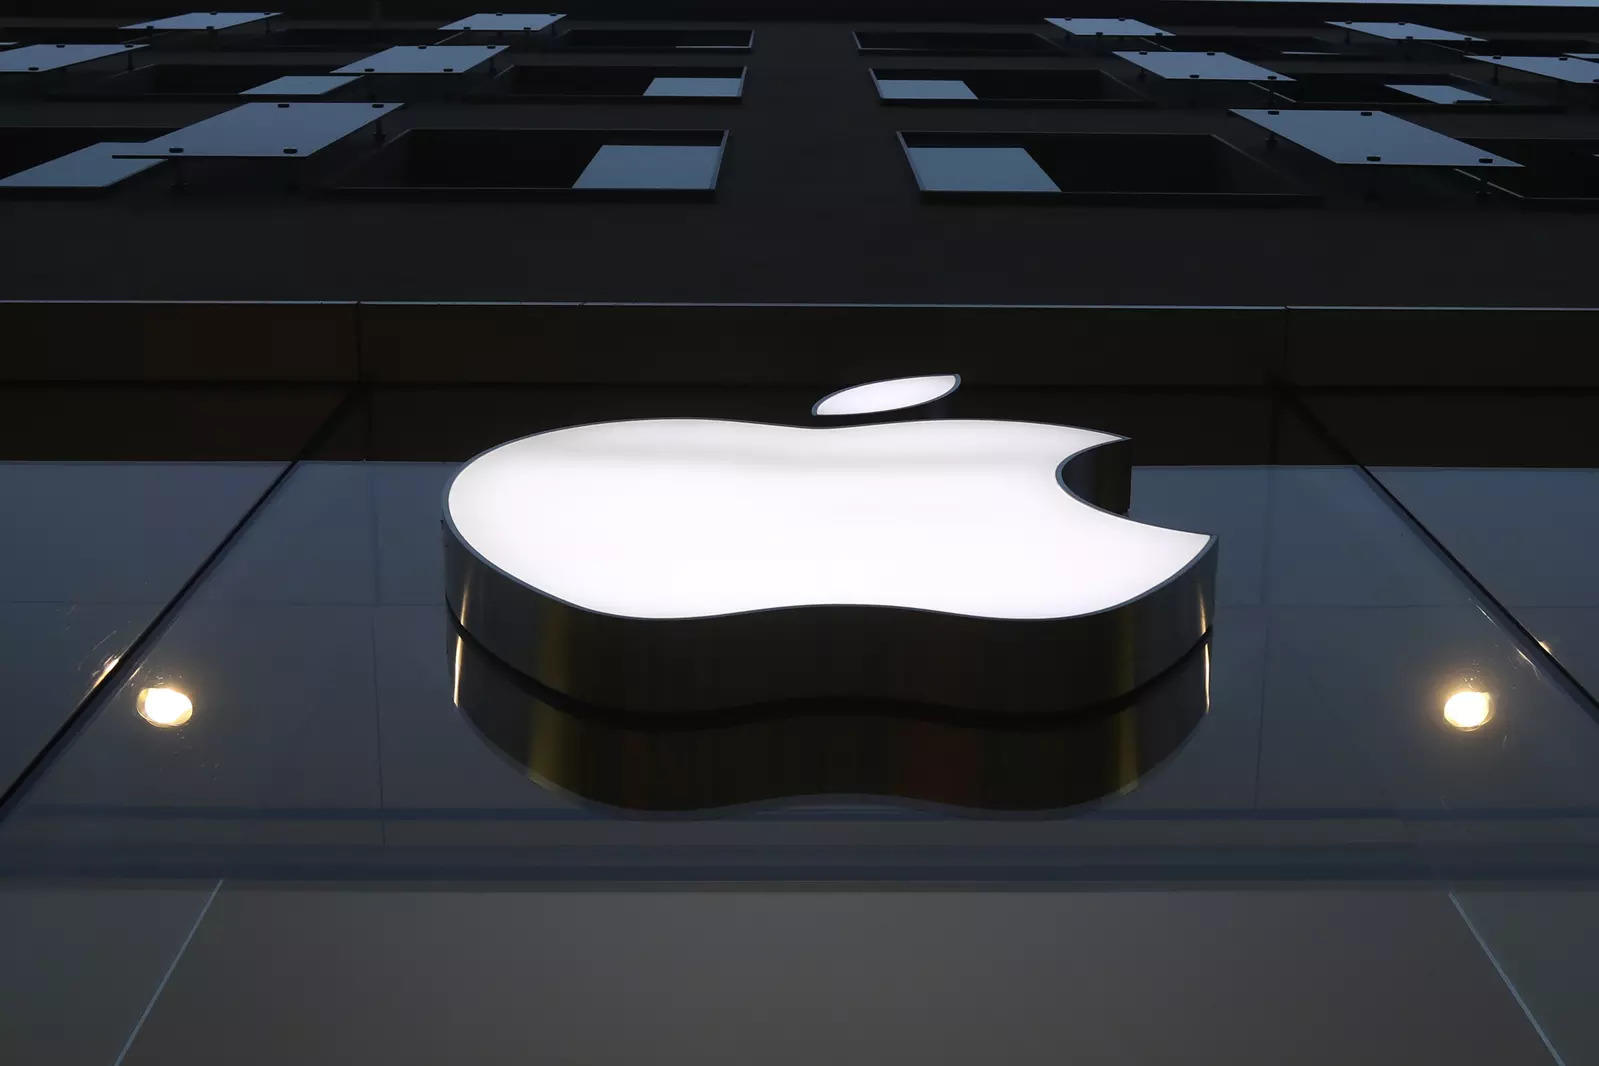 Apple trở thành nhà bán điện thoại thông minh lớn nhất thế giới với lượng xuất xưởng kỷ lục – Tin mới nhất